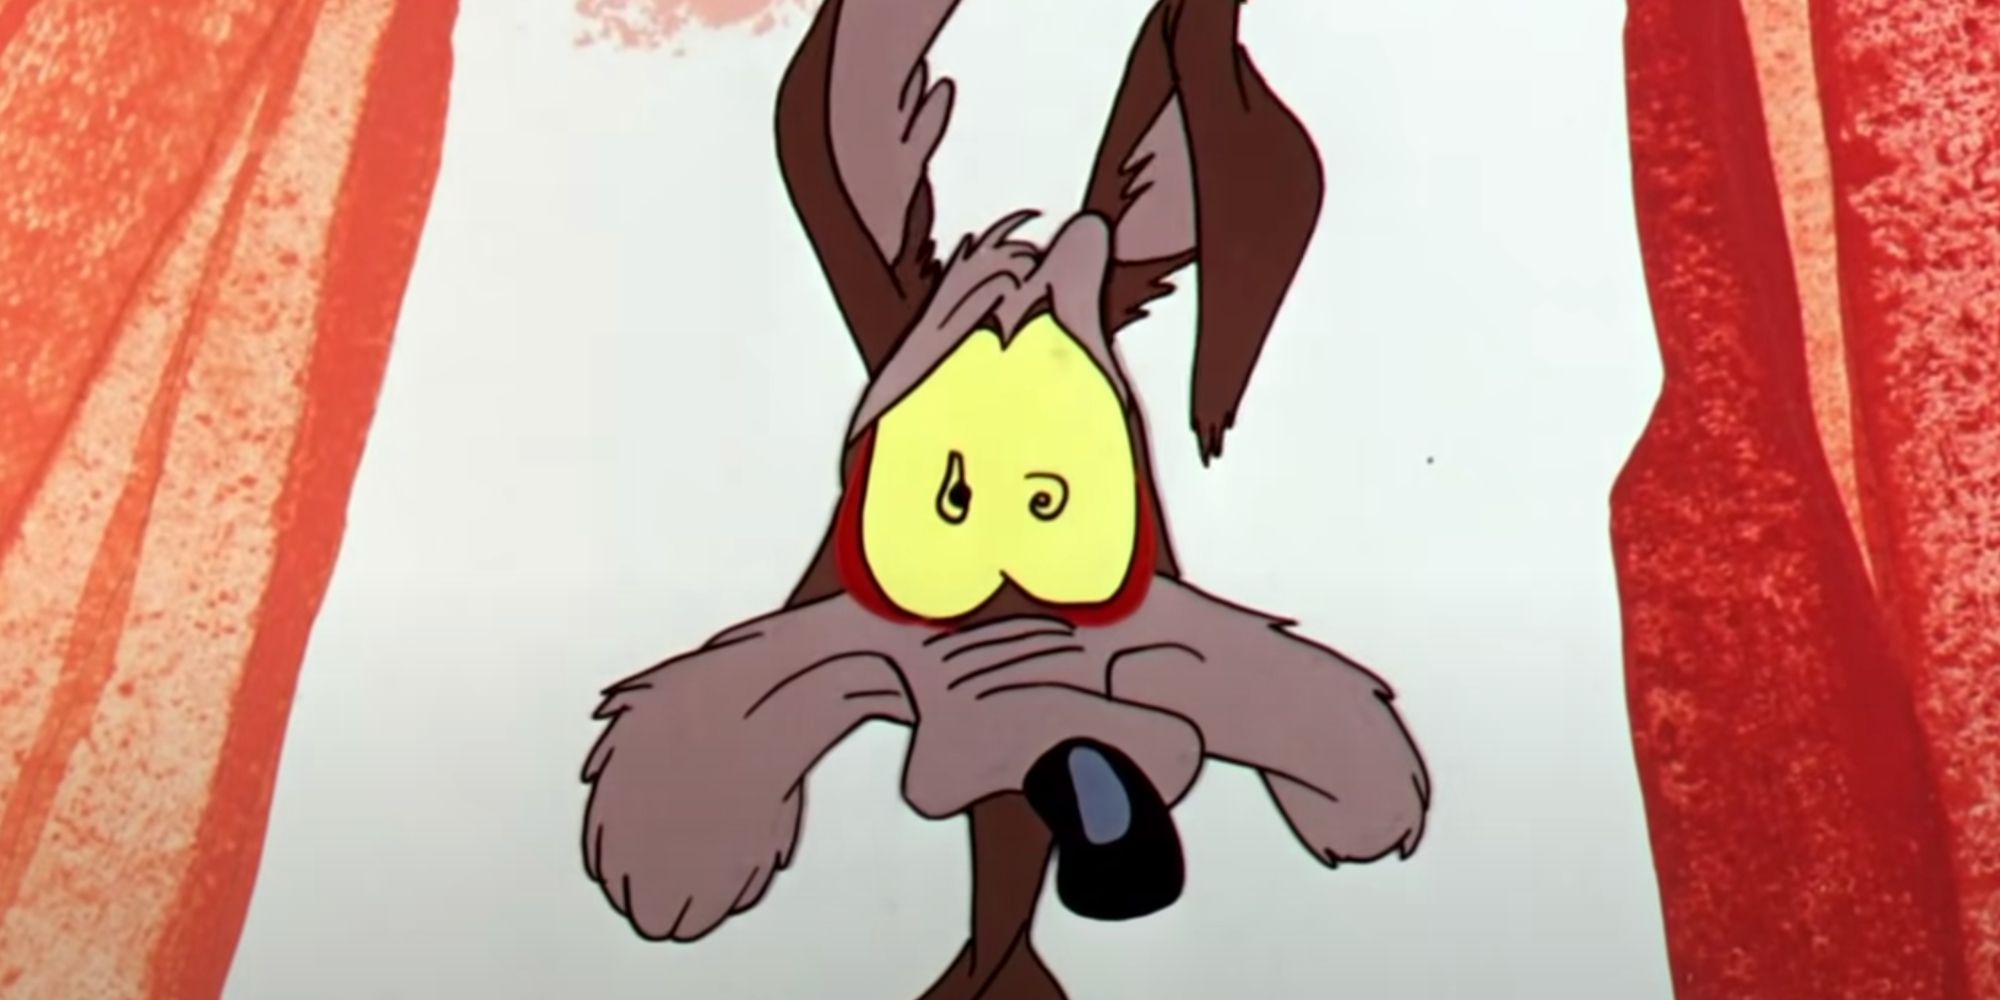 Coyote looking worried in a Looney Tunes cartoon.